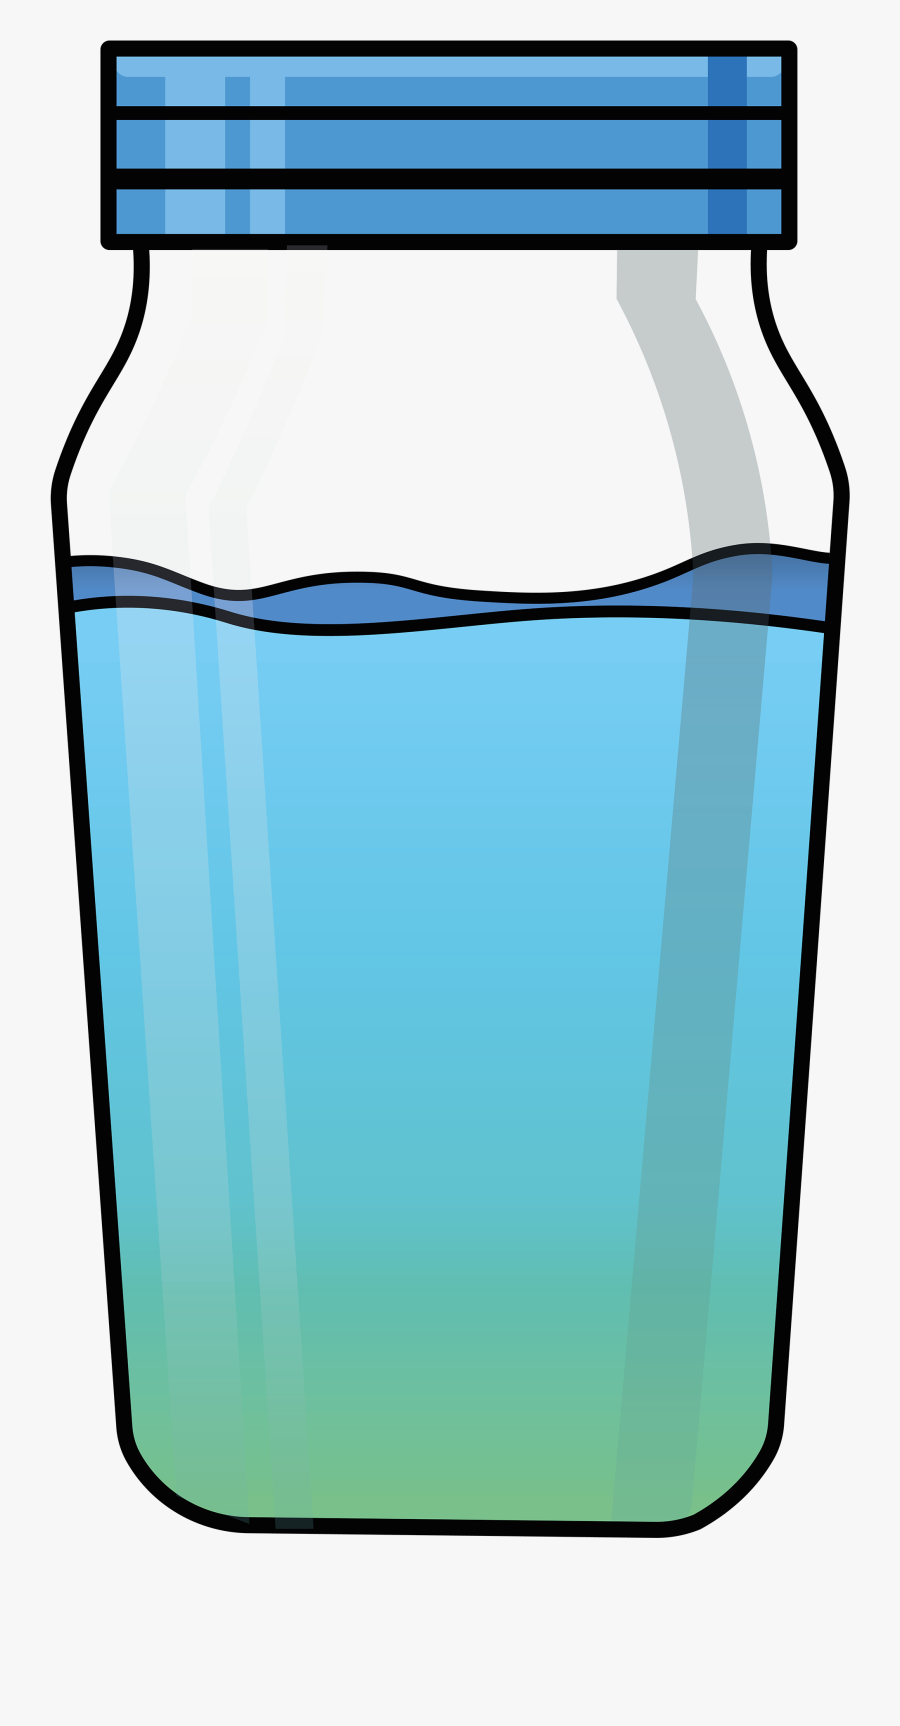 Slurp Illustration On Behance - Water Bottle Drawing Illustration, Transparent Clipart